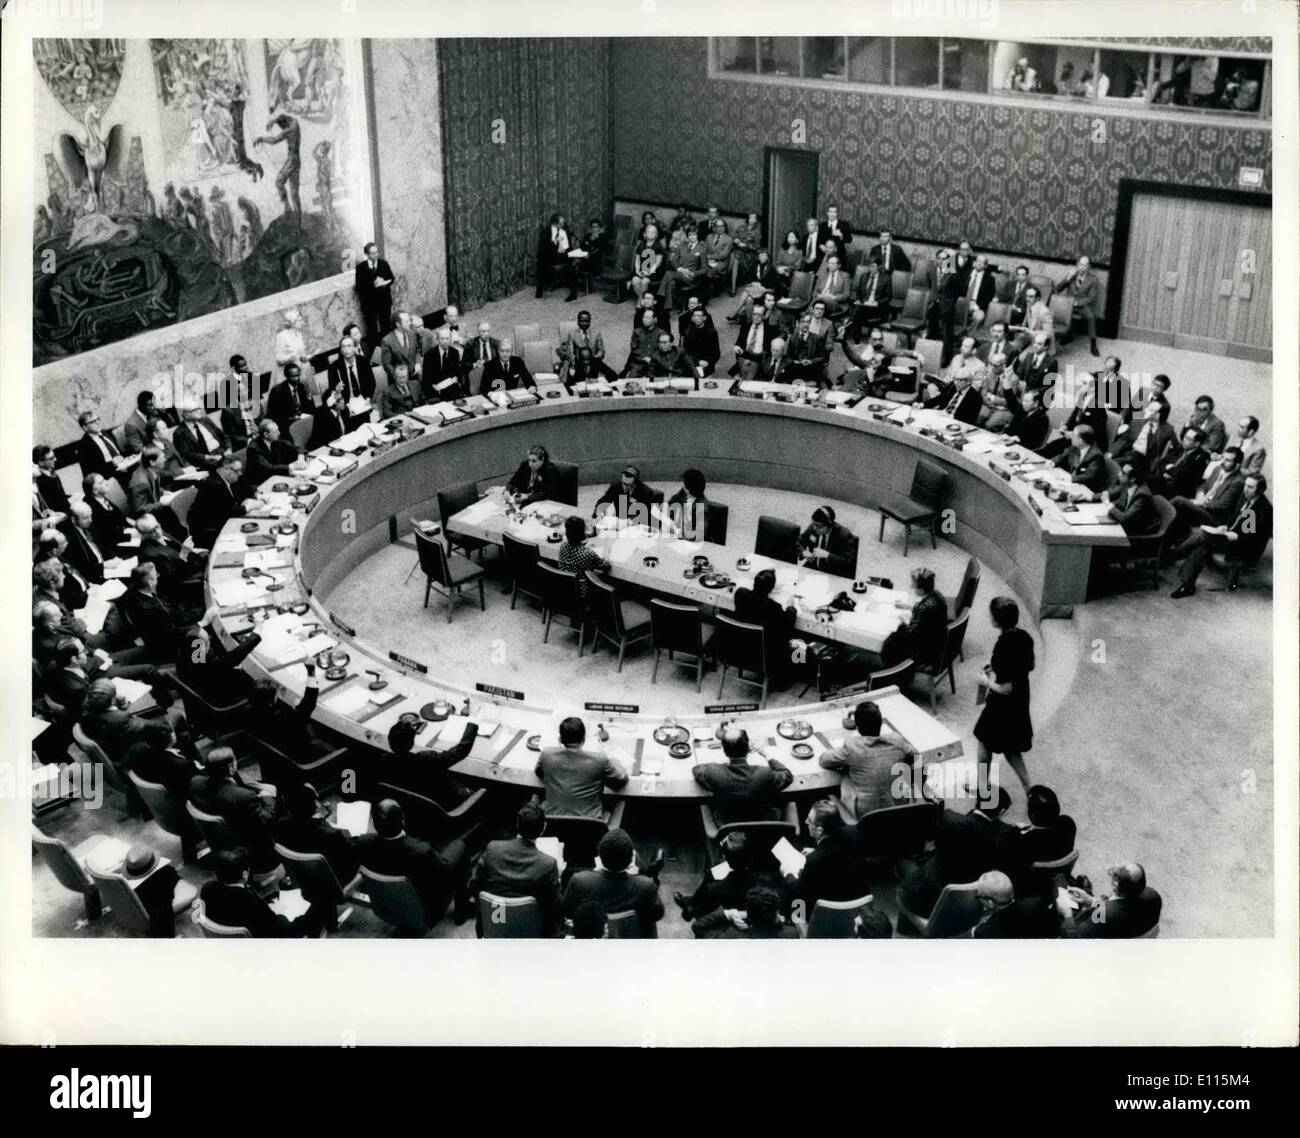 01 janvier 1976 - United Nations Plaza, New York City : vote final sur la résolution du Conseil de sécurité sur le Moyen-Orient. Illustré de photos pays ayant voté en faveur de la résolution va dans le sens horaire autour de la table P[LO représentant (pas de vote) Syrie (pas de vote) Libye (bien que le droit de vote n'a pas vote oui) Le Pakistan, Panama vote oui, la Roumanie vote oui, la Suède a voté pour Atslain (plus tard), l'URSS vote oui, Royaume-Uni (plus tard voté de s'abstenir, Secrétaire Général Waldheim (pas de vote) Tanzanie délégués Salim Salim, président du conseil vote oui, sous-secrétaire général (pas de vote) United States (plus tard Banque D'Images